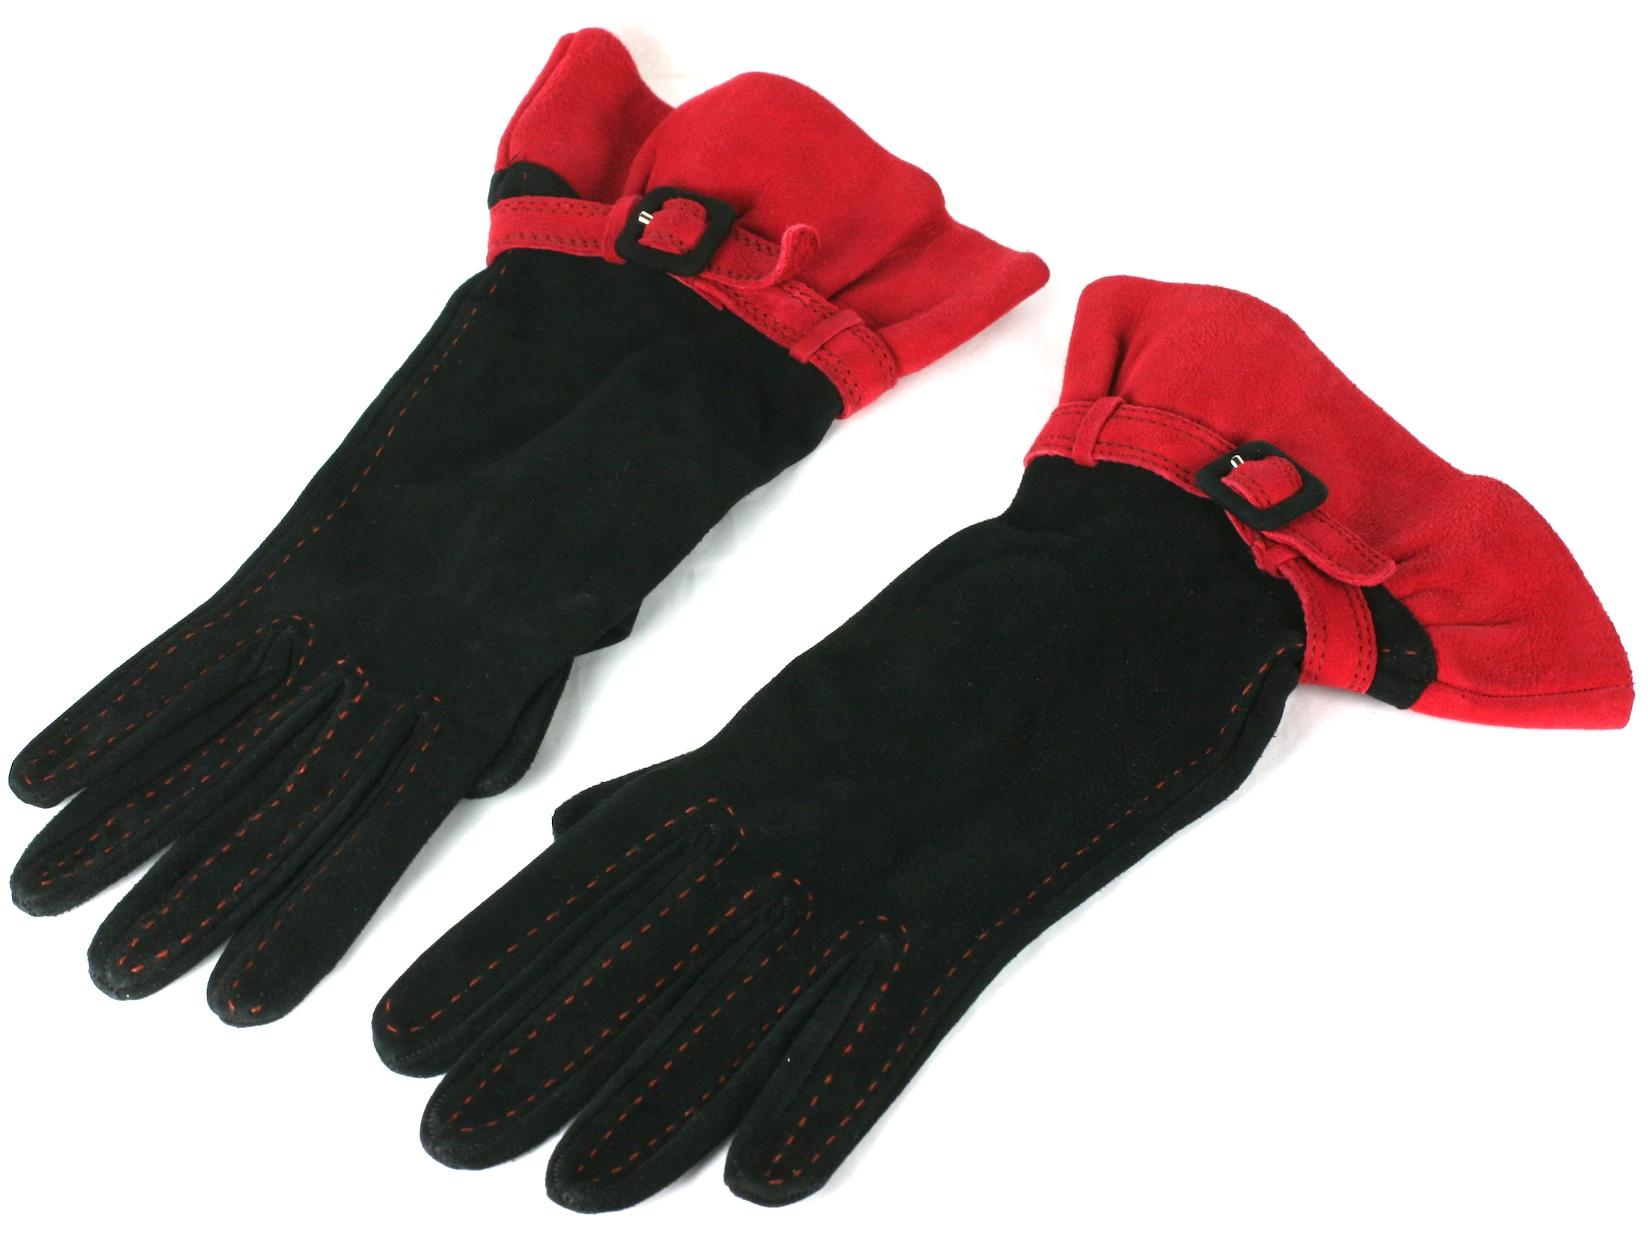 Moschino dramatische schwarze und rote Handschuhe aus Wildleder mit Rüschen. Der schwarze Wildlederkörper des Handschuhs  oben in rot genäht,  mit Gürtel am Handgelenk und Rüschen aus tomatenrotem Wildleder.
Etikett Moschino , Made in Italy.